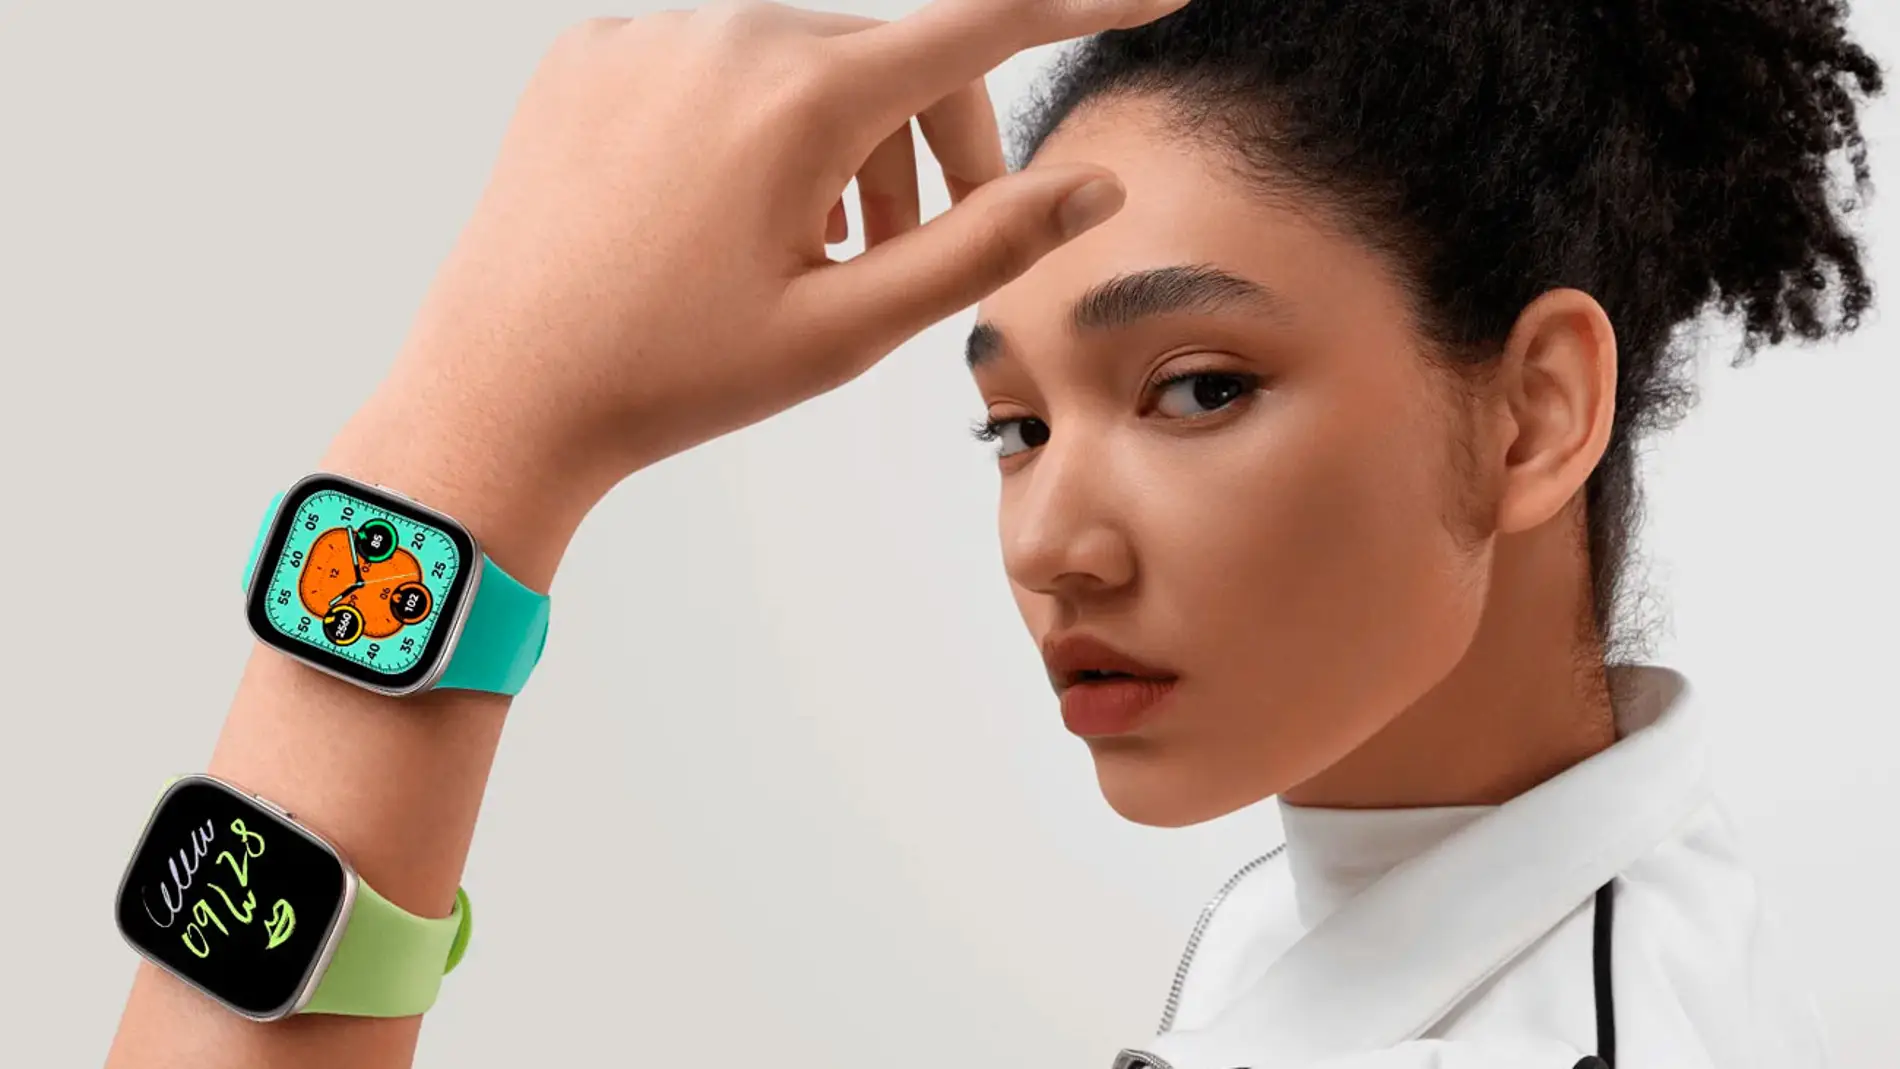 El nuevo reloj de Xiaomi llega a España: así es el Redmi Watch 3